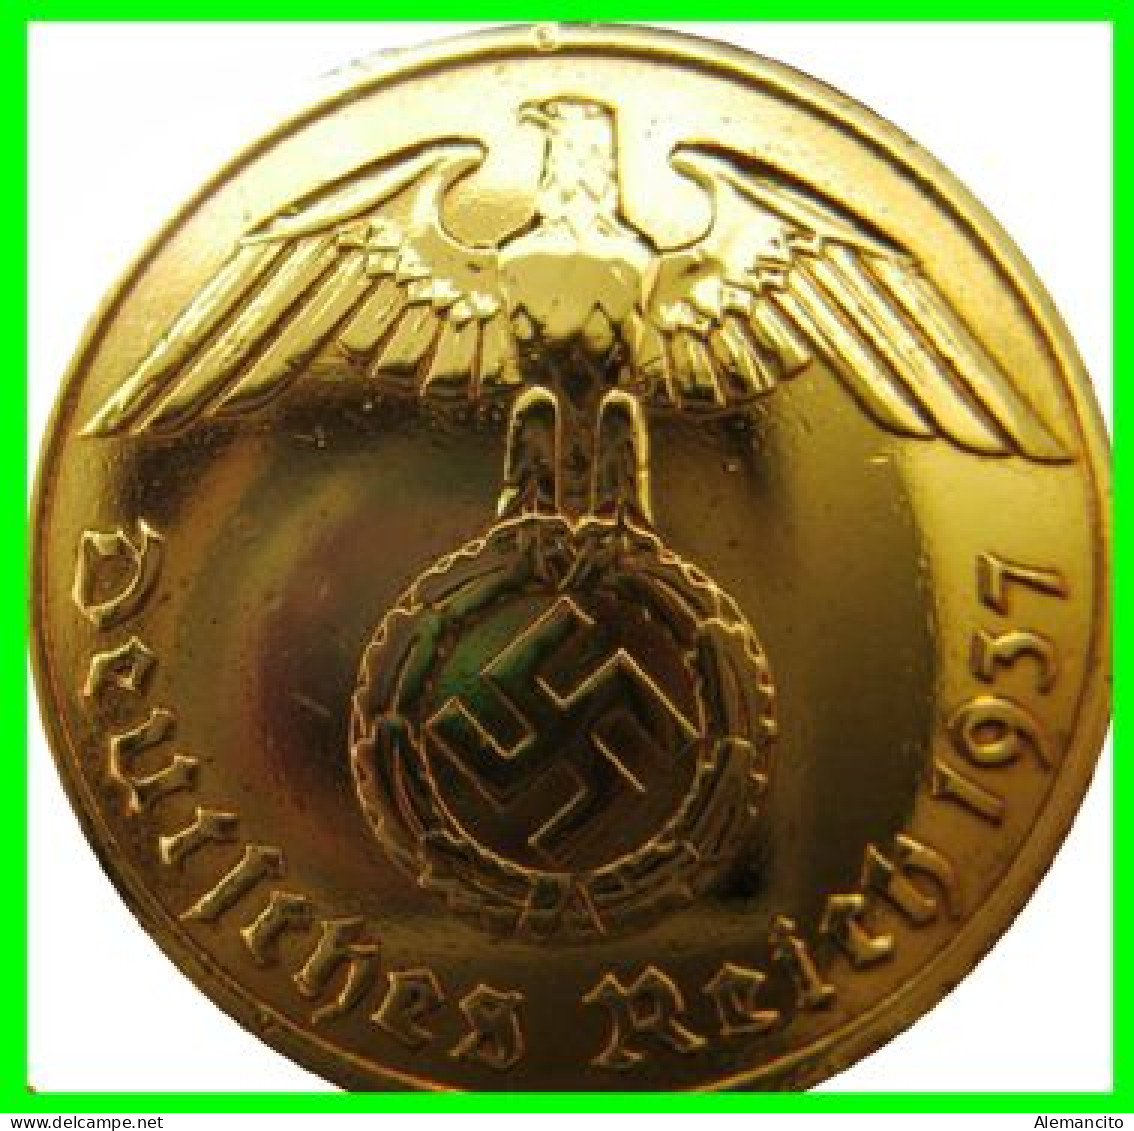 GERMANY - ALEMANIA DEUTFCHES REICH MONEDA DE 0.10 REICHSPFENNIG AÑO 1937 – CECA-F - KM 92 - BRONCE - ESTRIADA - 10 Reichspfennig